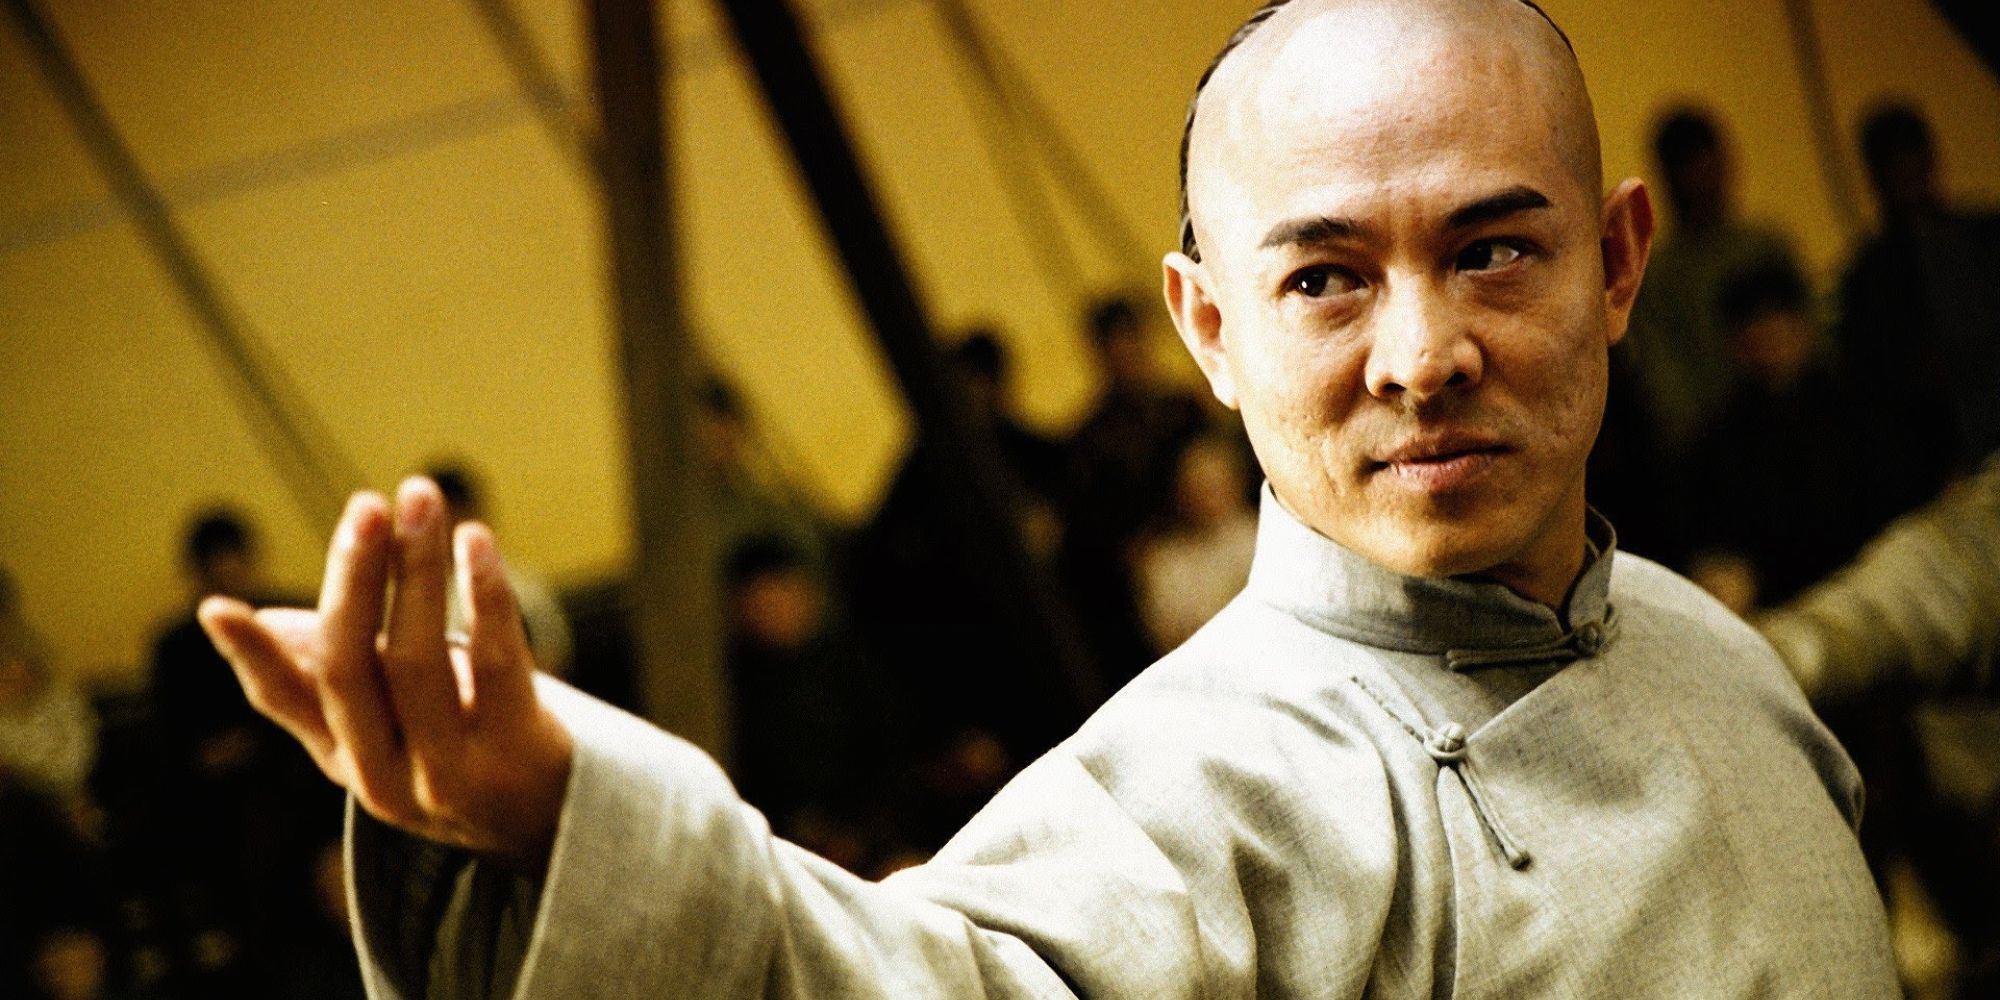 Jet Li as Huo Yuanjia in 'Fearless'